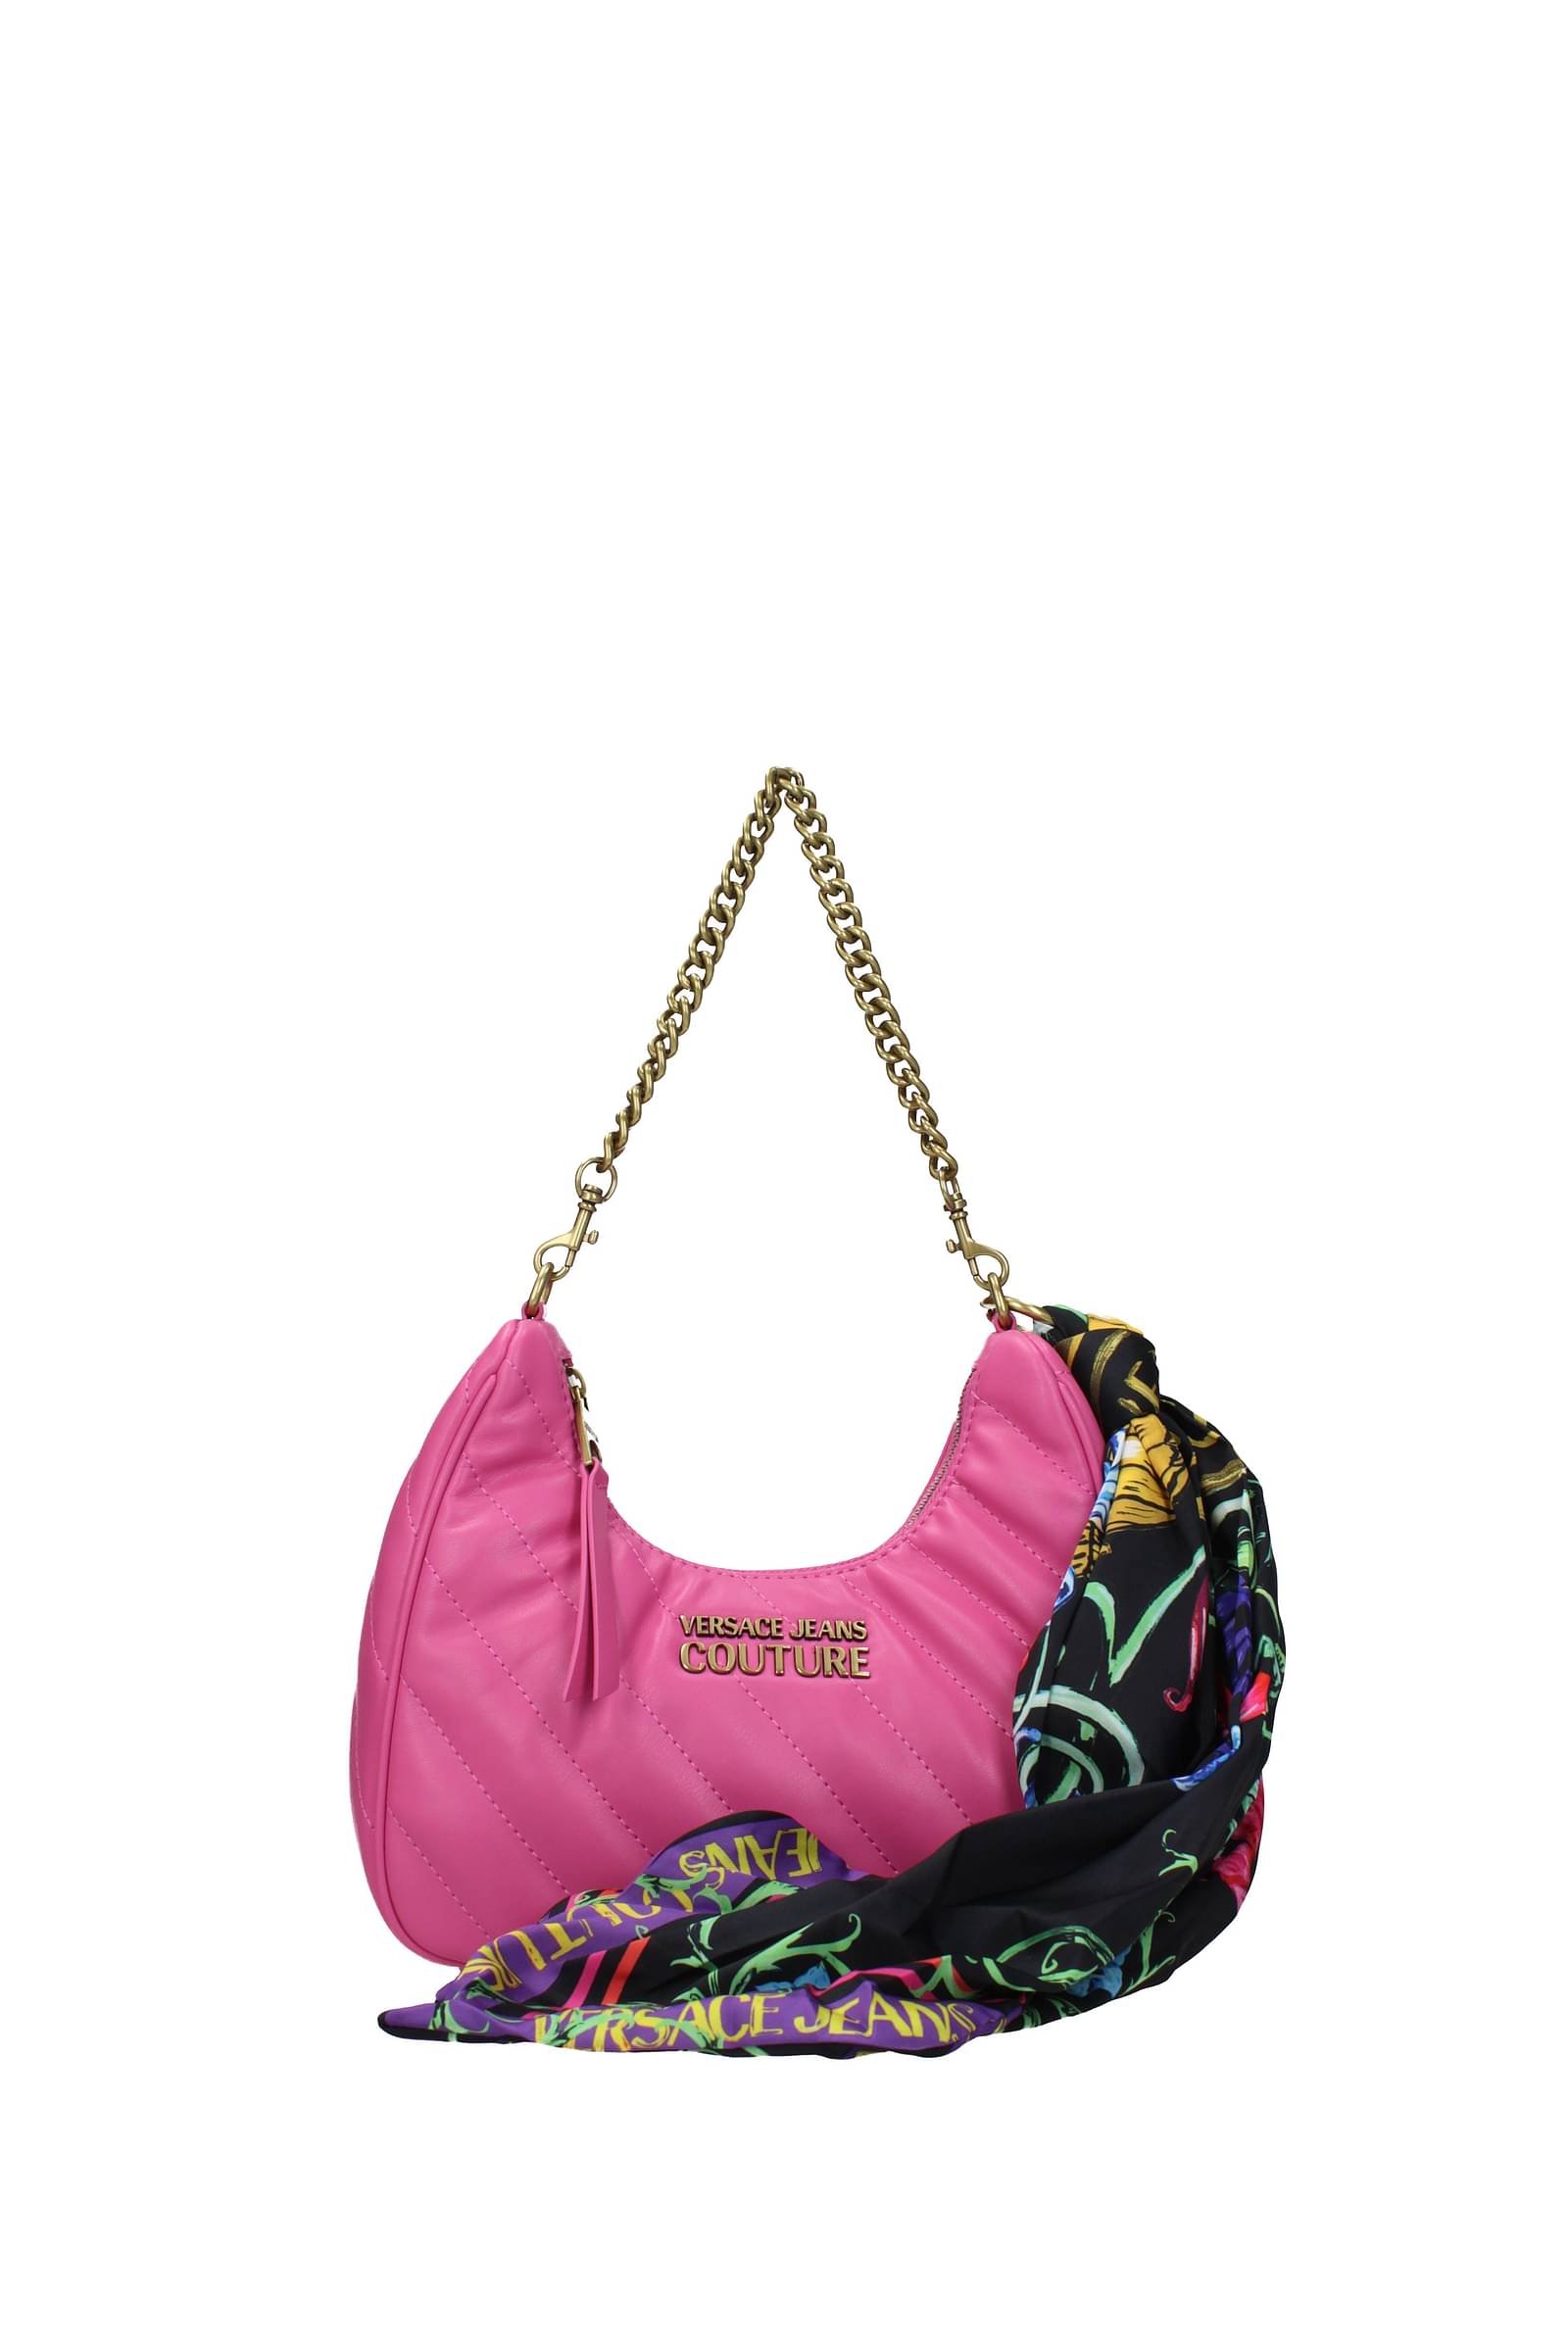 Vintage cute hot pink Juicy Couture Bag Send any... - Depop